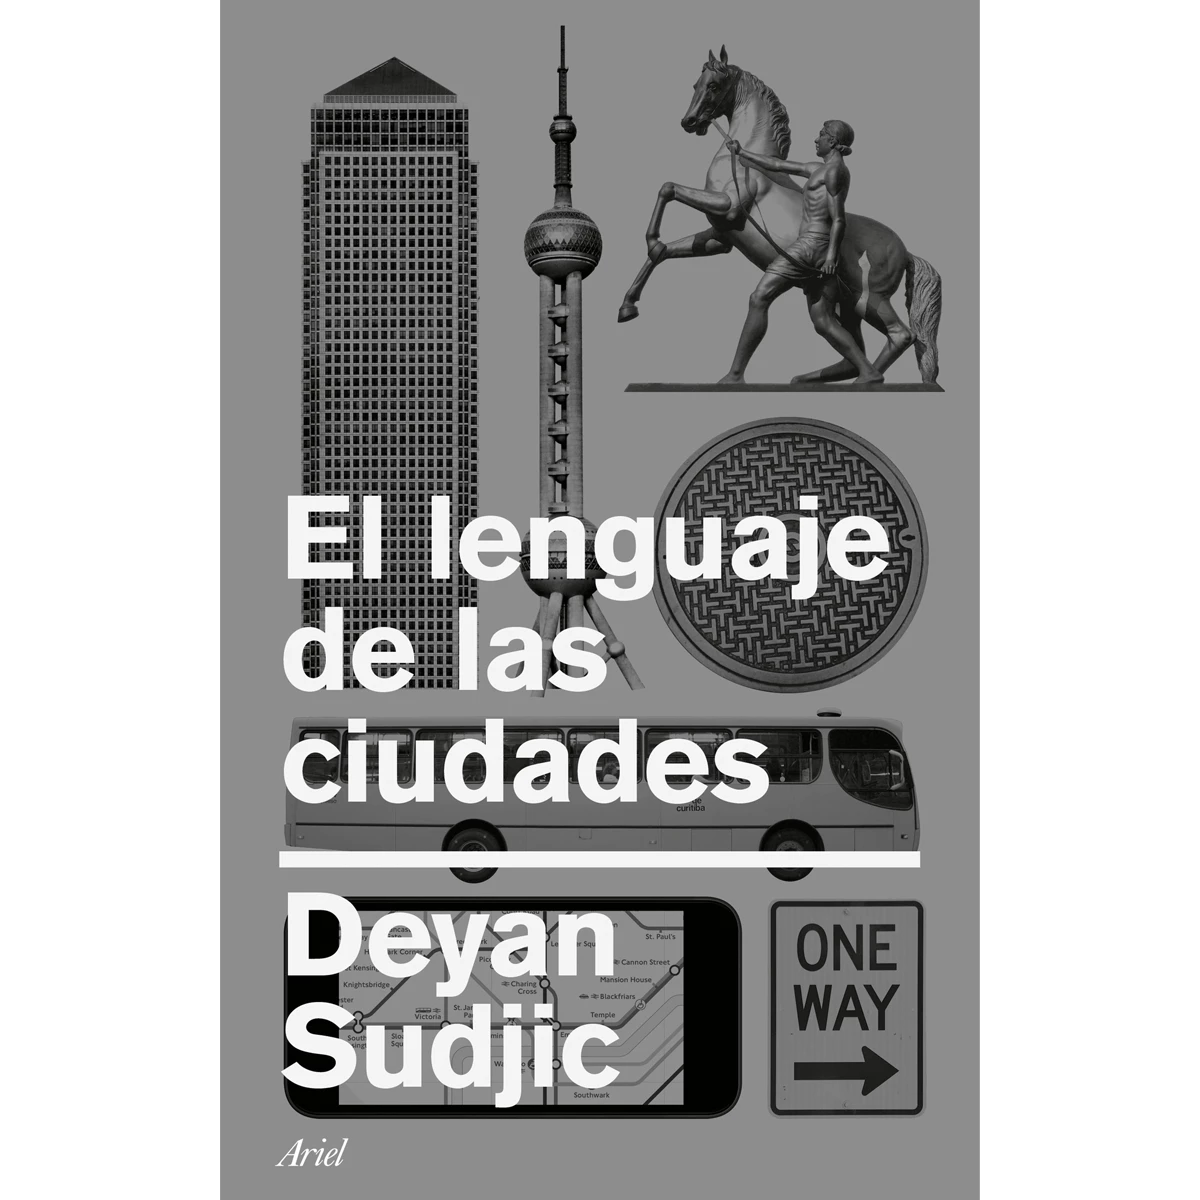 El lenguaje de las ciudades